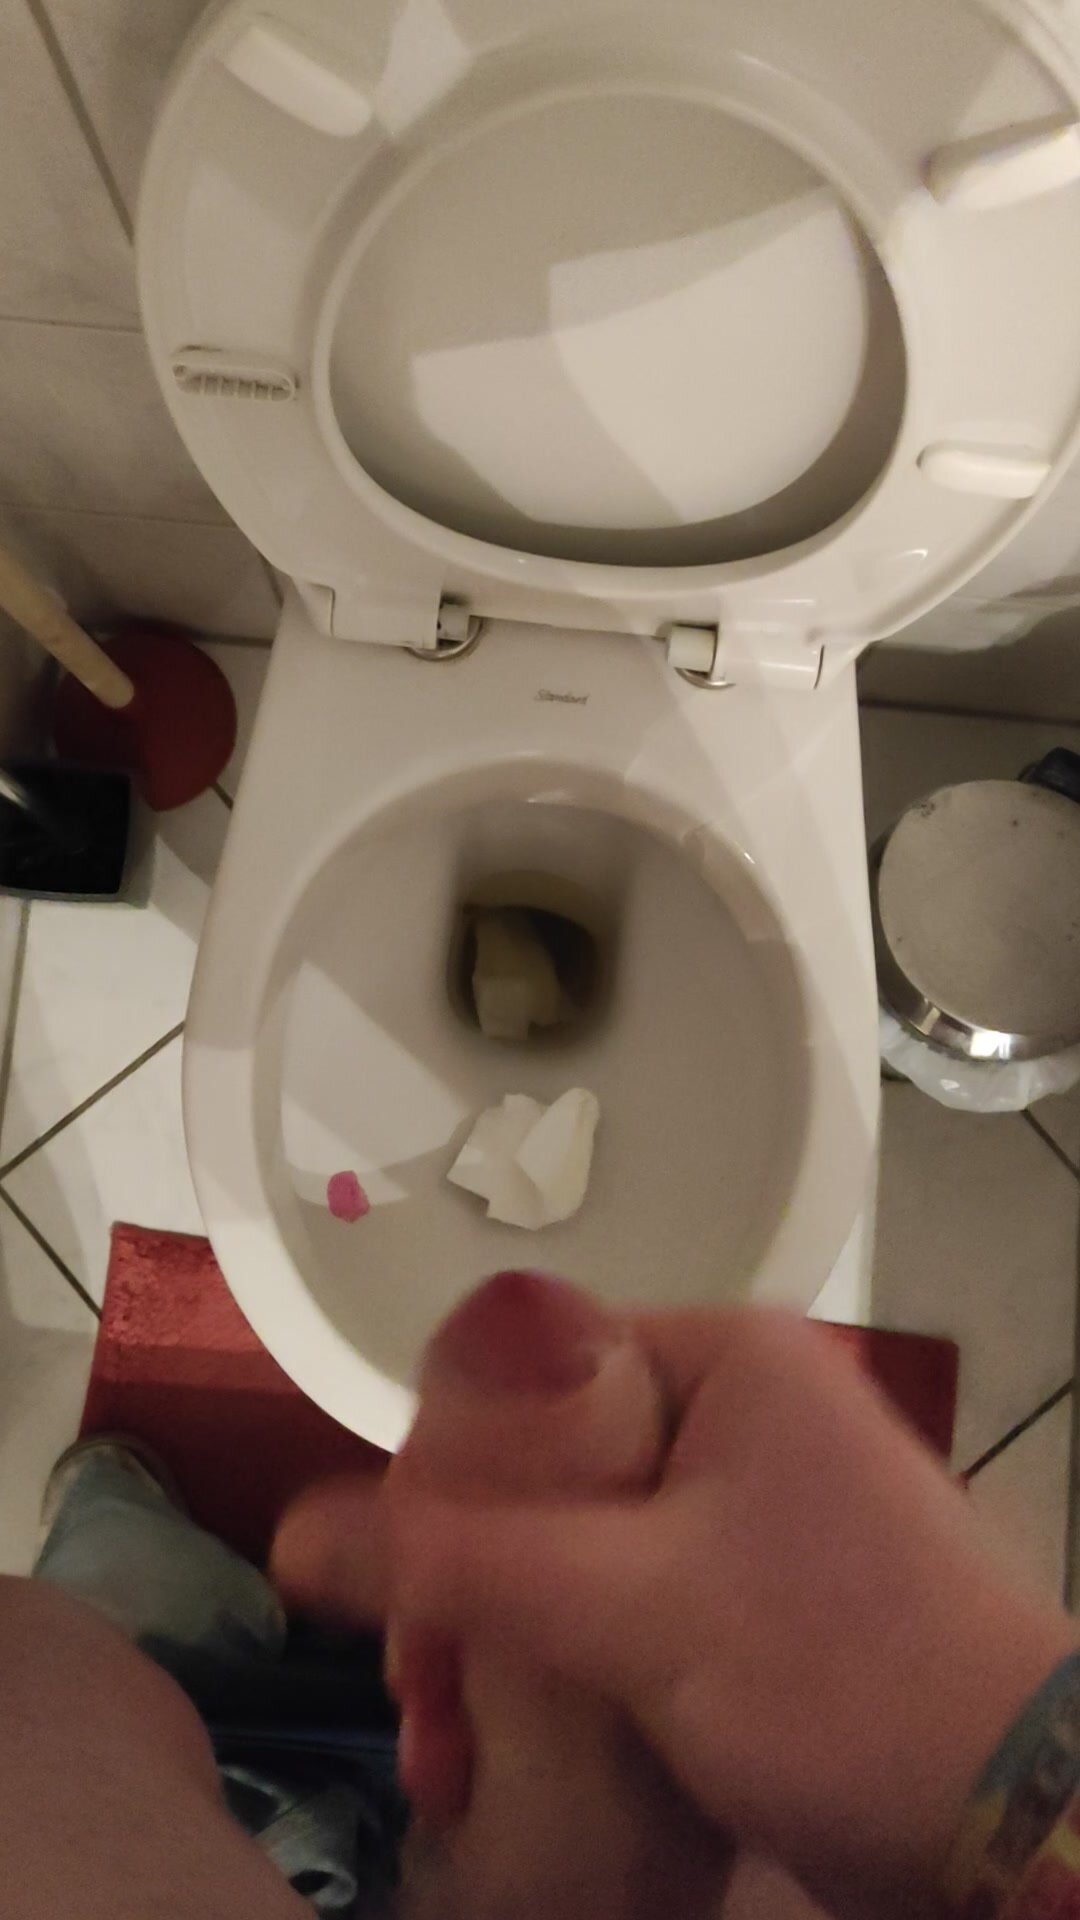 Semen in toilet